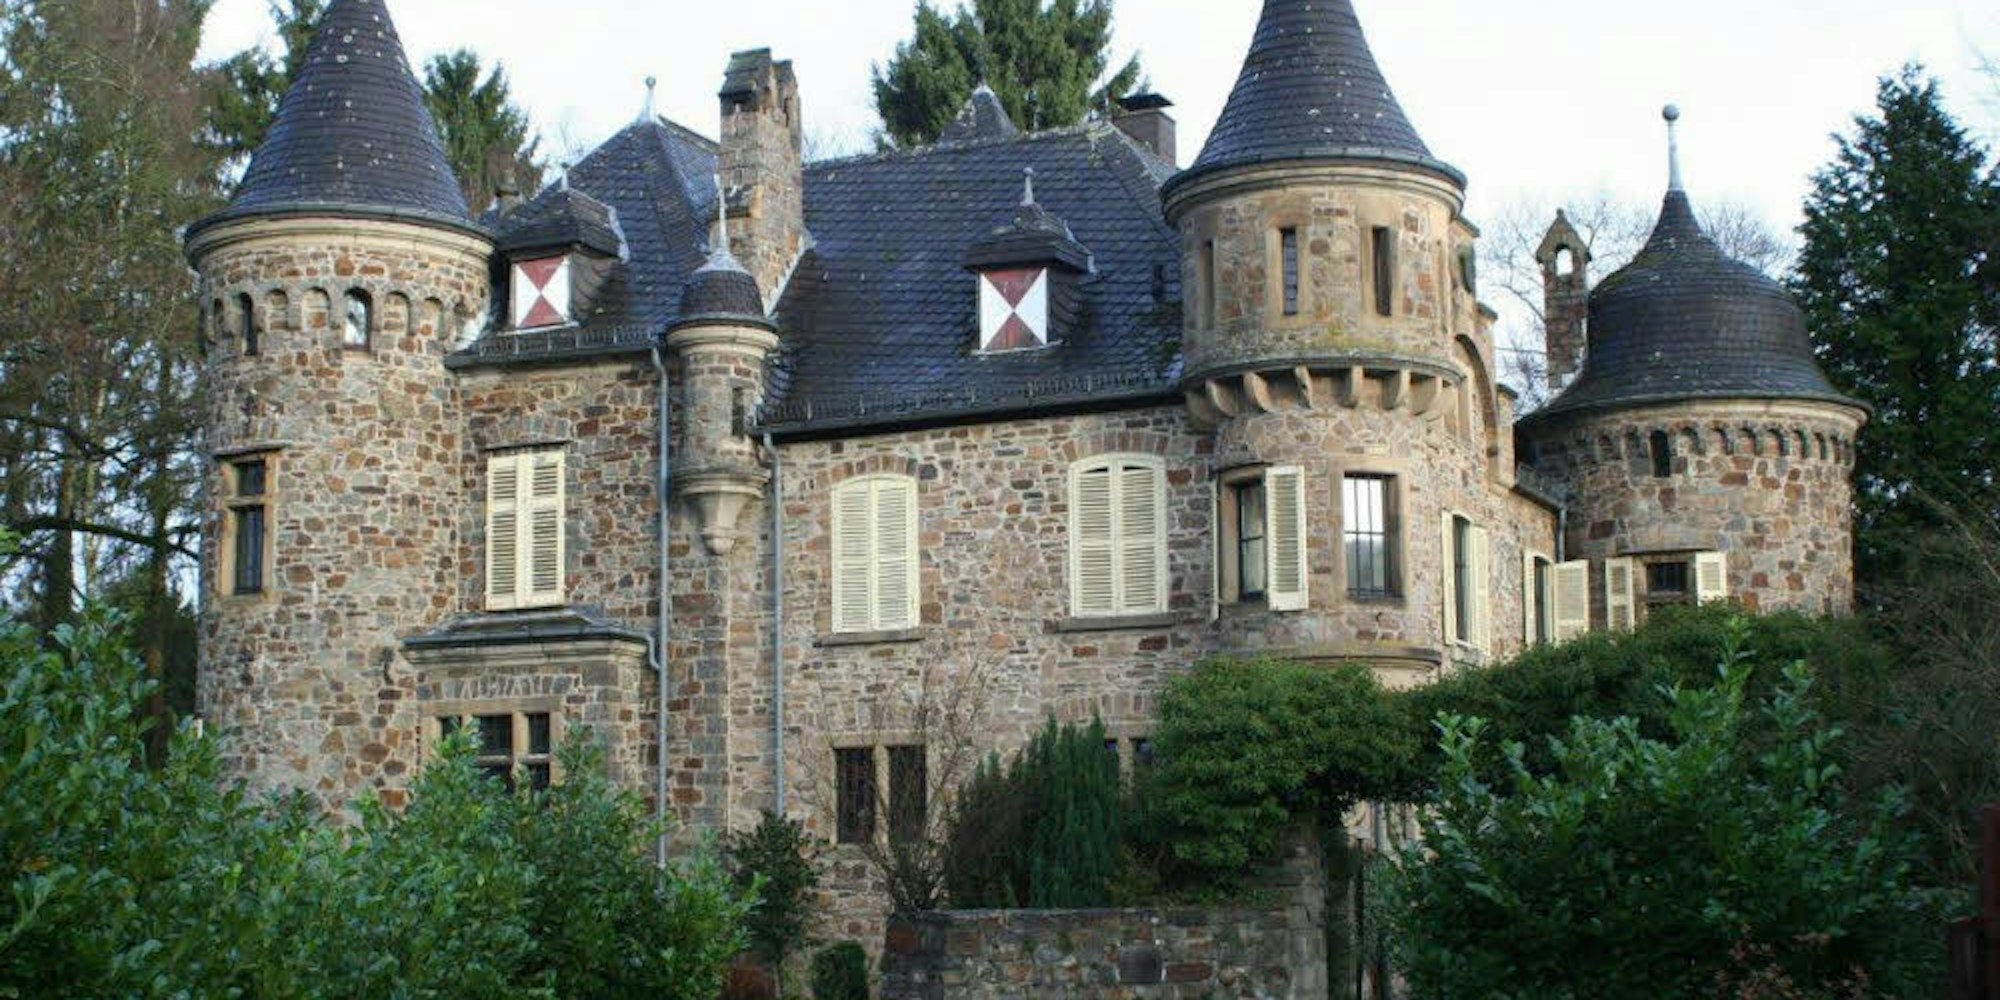 Märchenschloss im Siegtal: Die Burg Dattenfeld im gleichnamigen Ort in Windeck hat jetzt den Besitzer gewechselt.